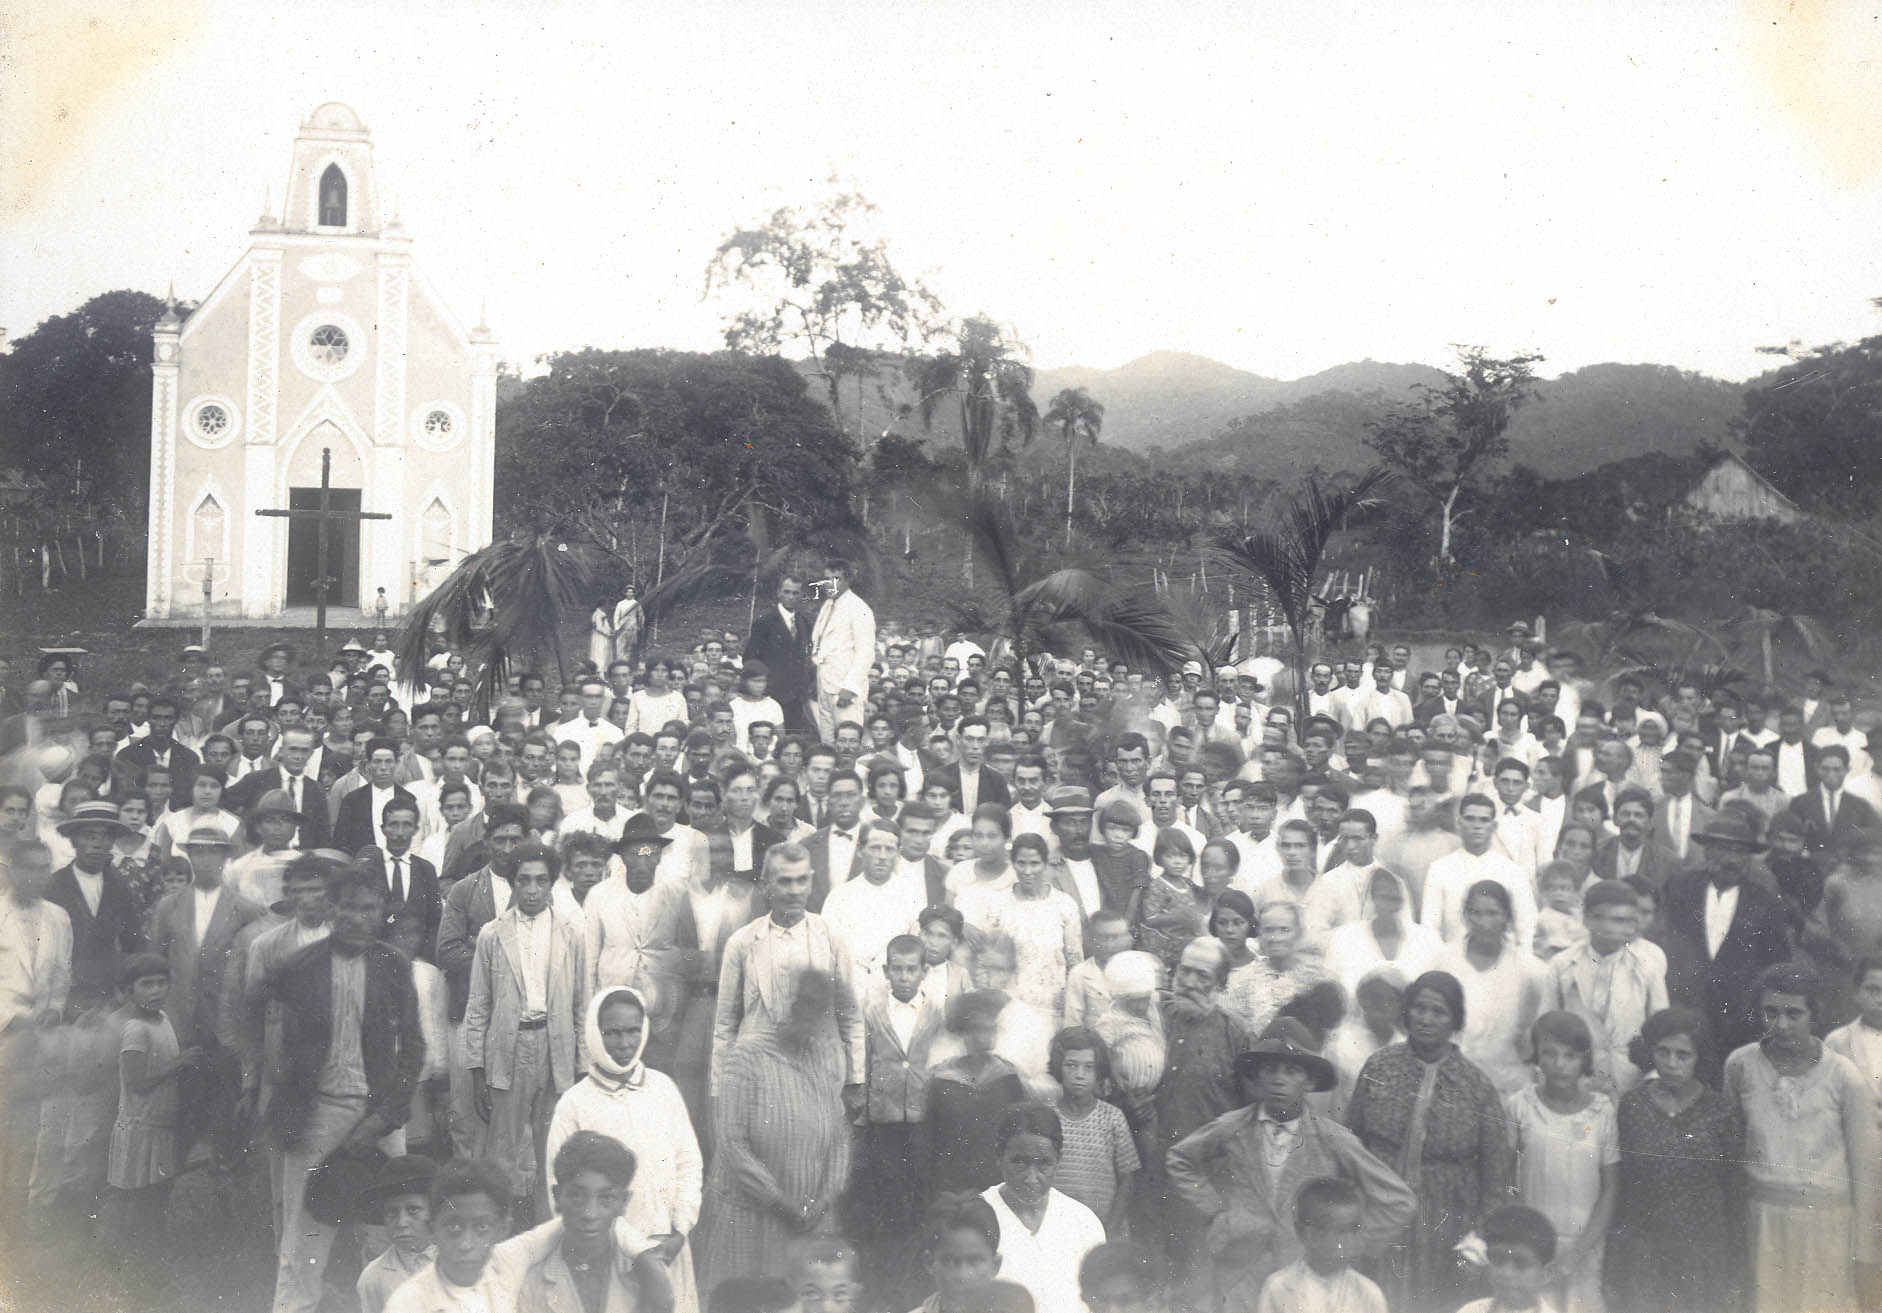 Moradores do bairro Machados na década de 1930. Crédito: Centro de Documentação e Memória Histórica de Itajaí